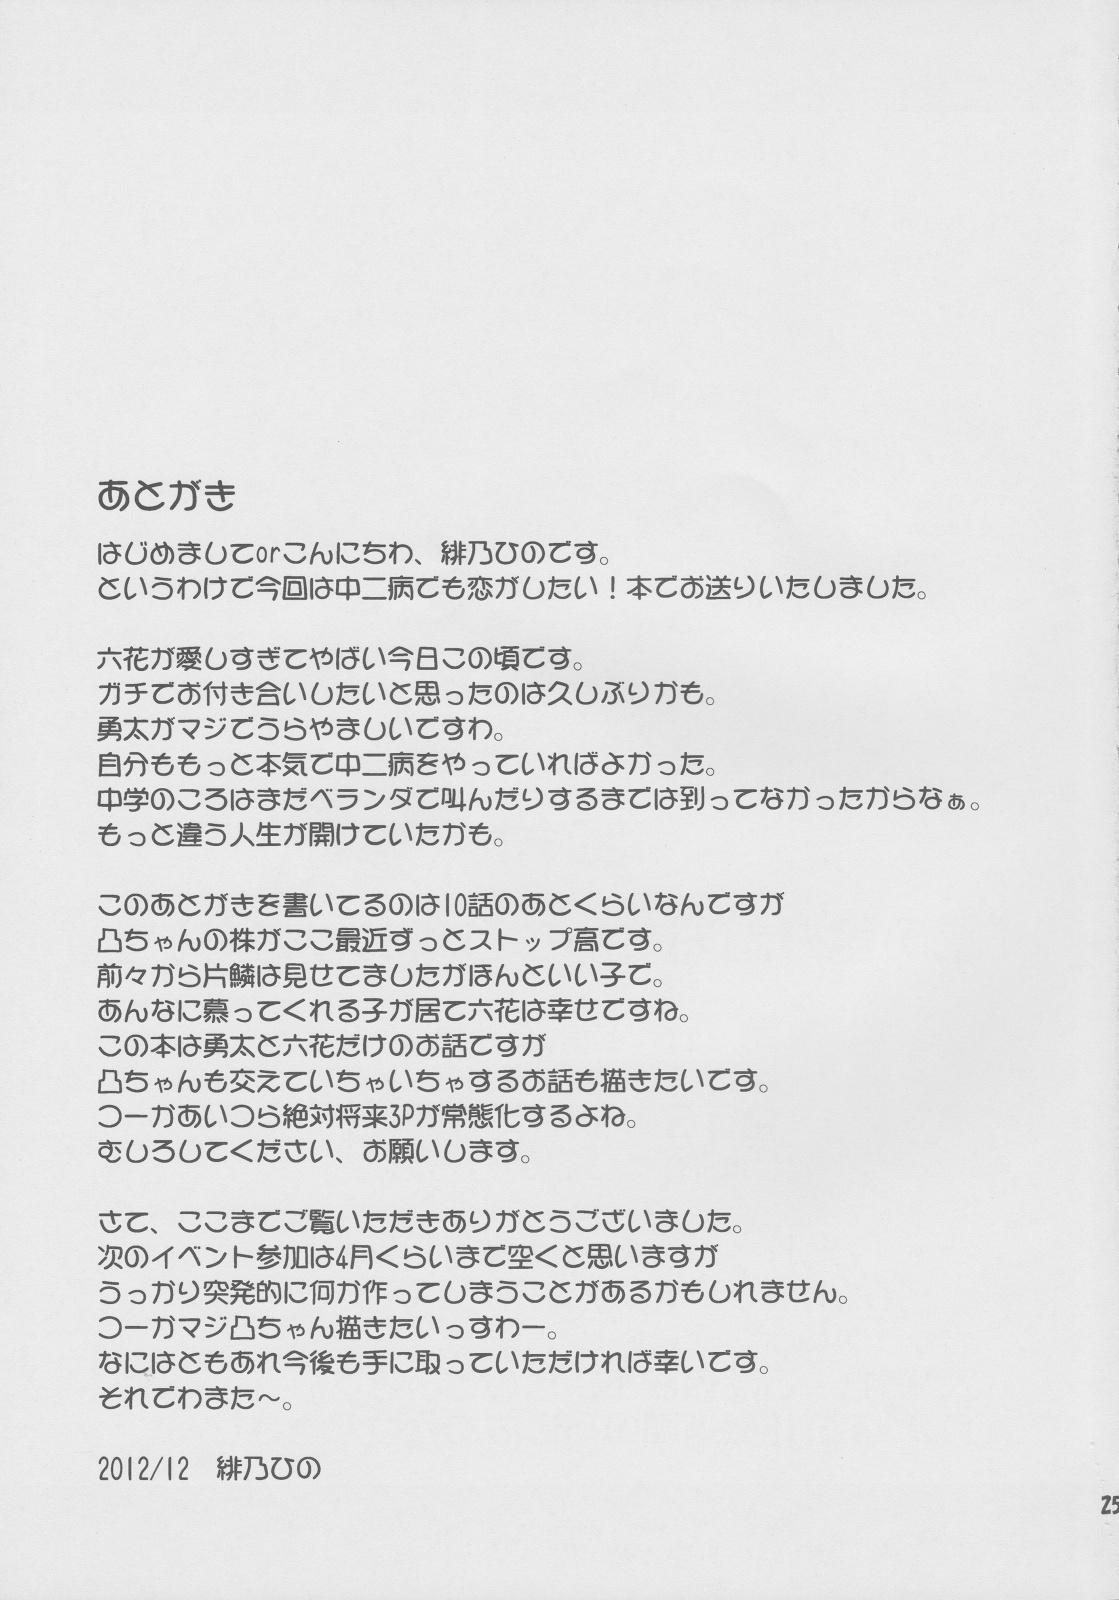 Rimming Yami no Mono ga Kaze nante Hiku wake ga nai - Chuunibyou demo koi ga shitai Groping - Page 24